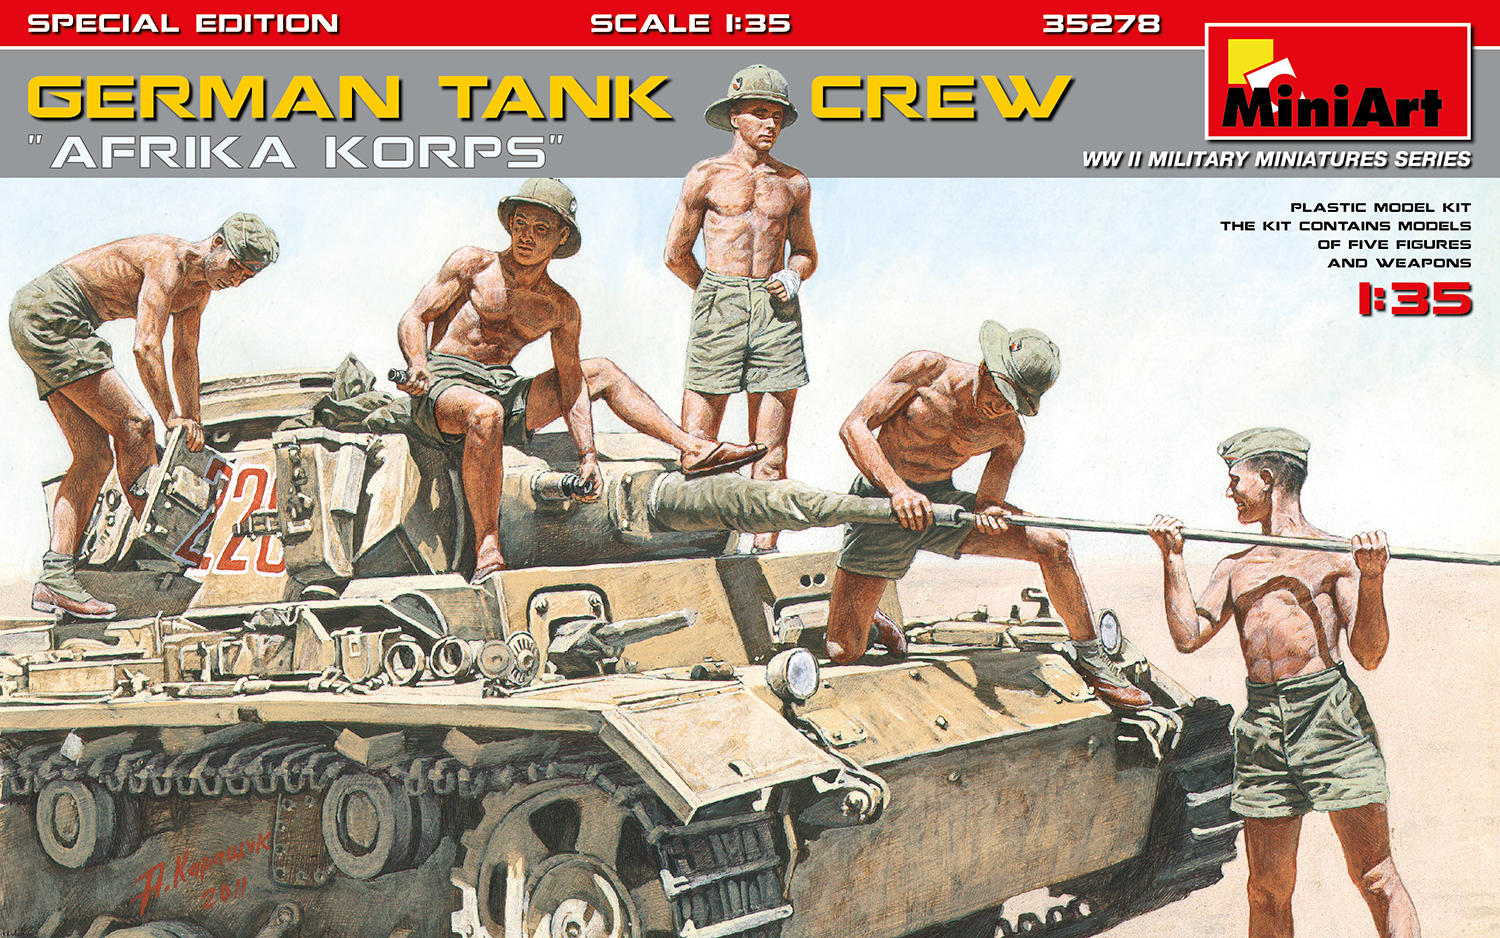 Pz.Kpfw.IV Ausf.D Deutsche Afrika Korps + 5 Figures German Tank Crew